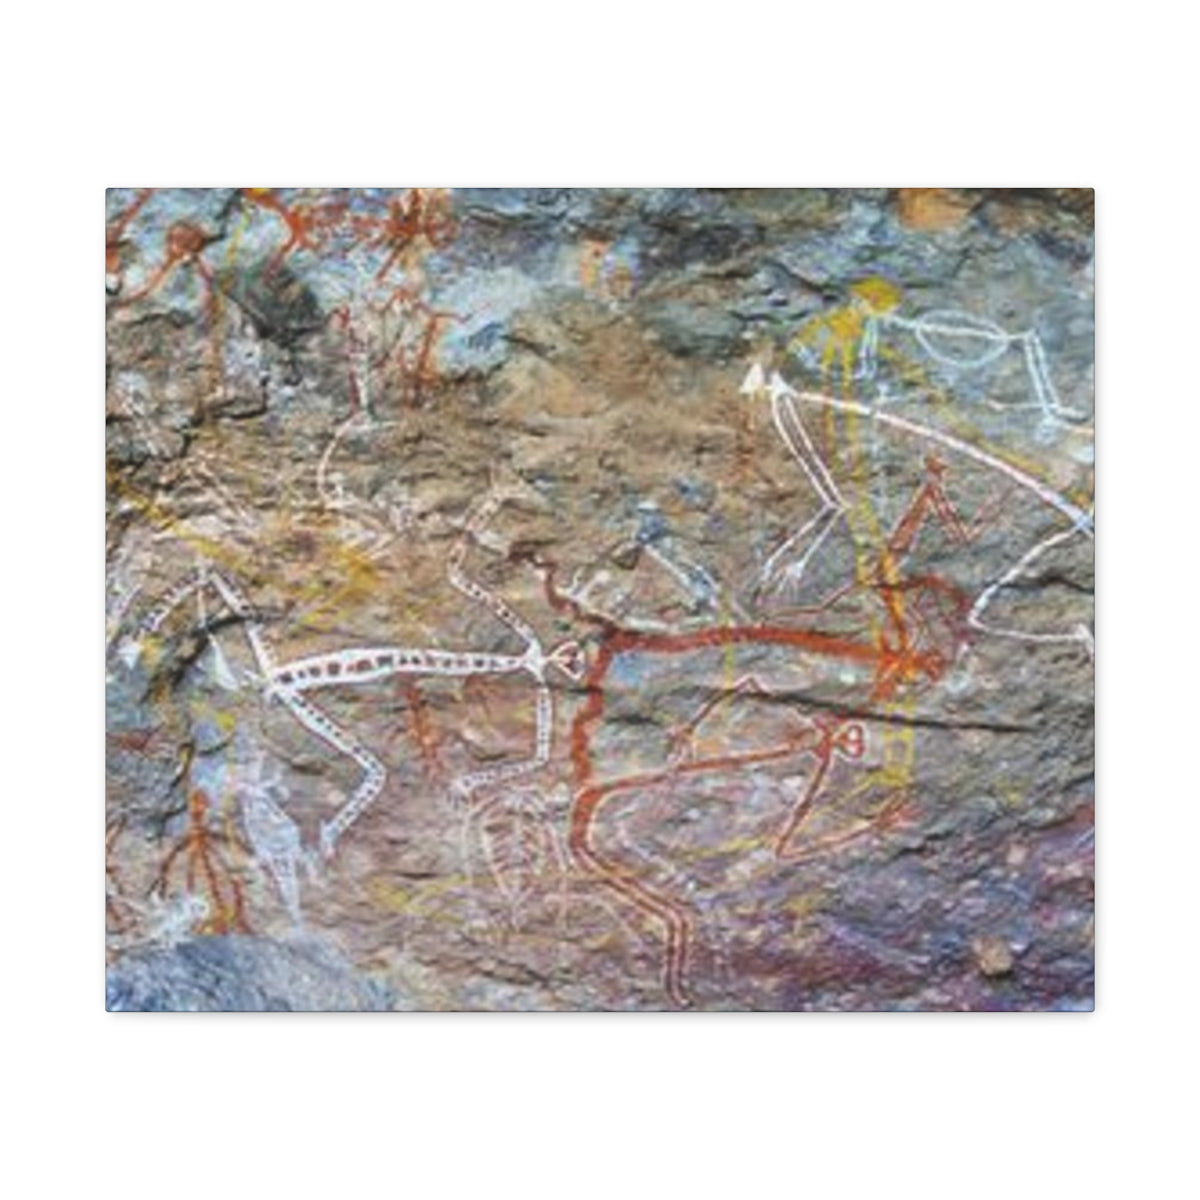 Australian Rock Art